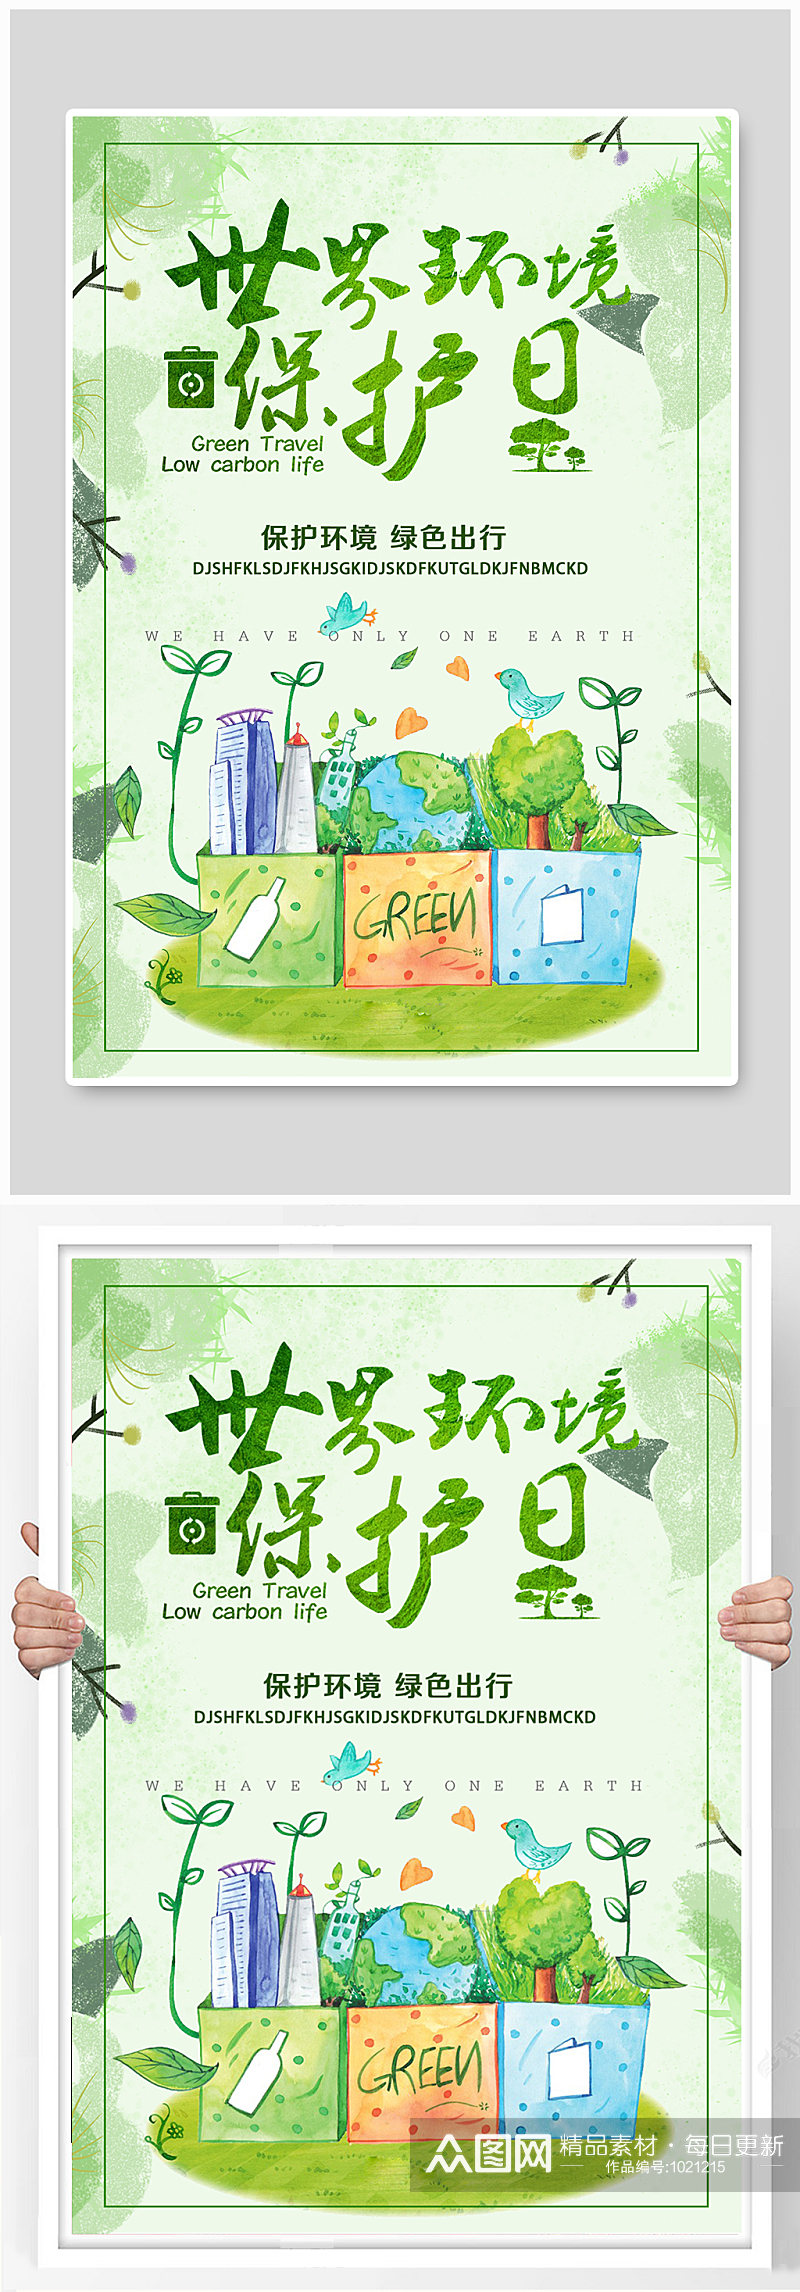 世界环境保护日宣传海报设计素材